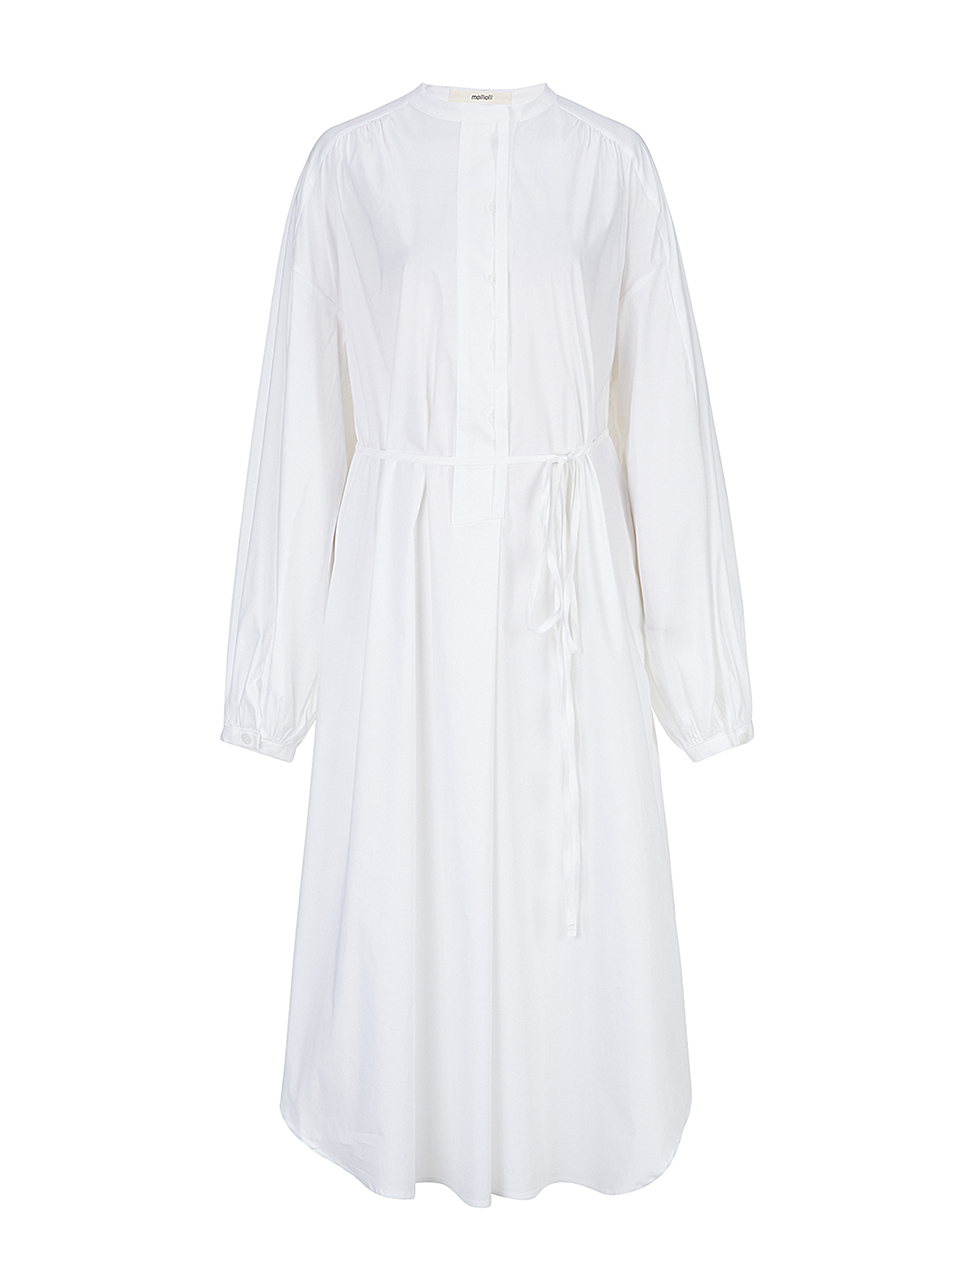 BLUEBELL midi shirt dress [white]